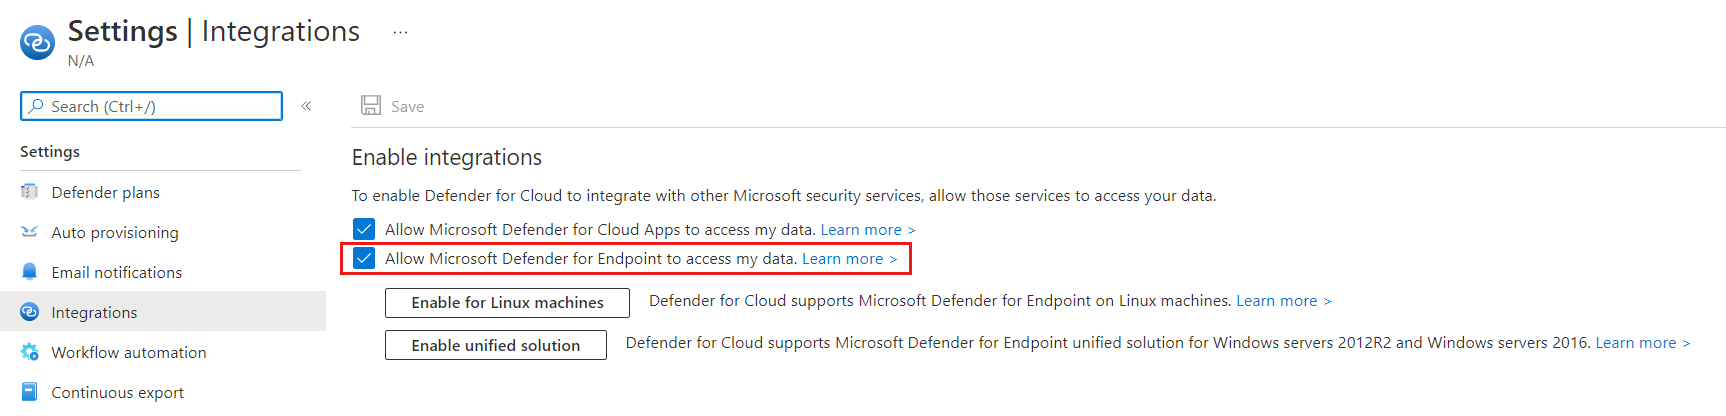 L’intégration entre Microsoft Defender pour le cloud et la solution EDR de Microsoft, Microsoft Defender pour point de terminaison est activée.